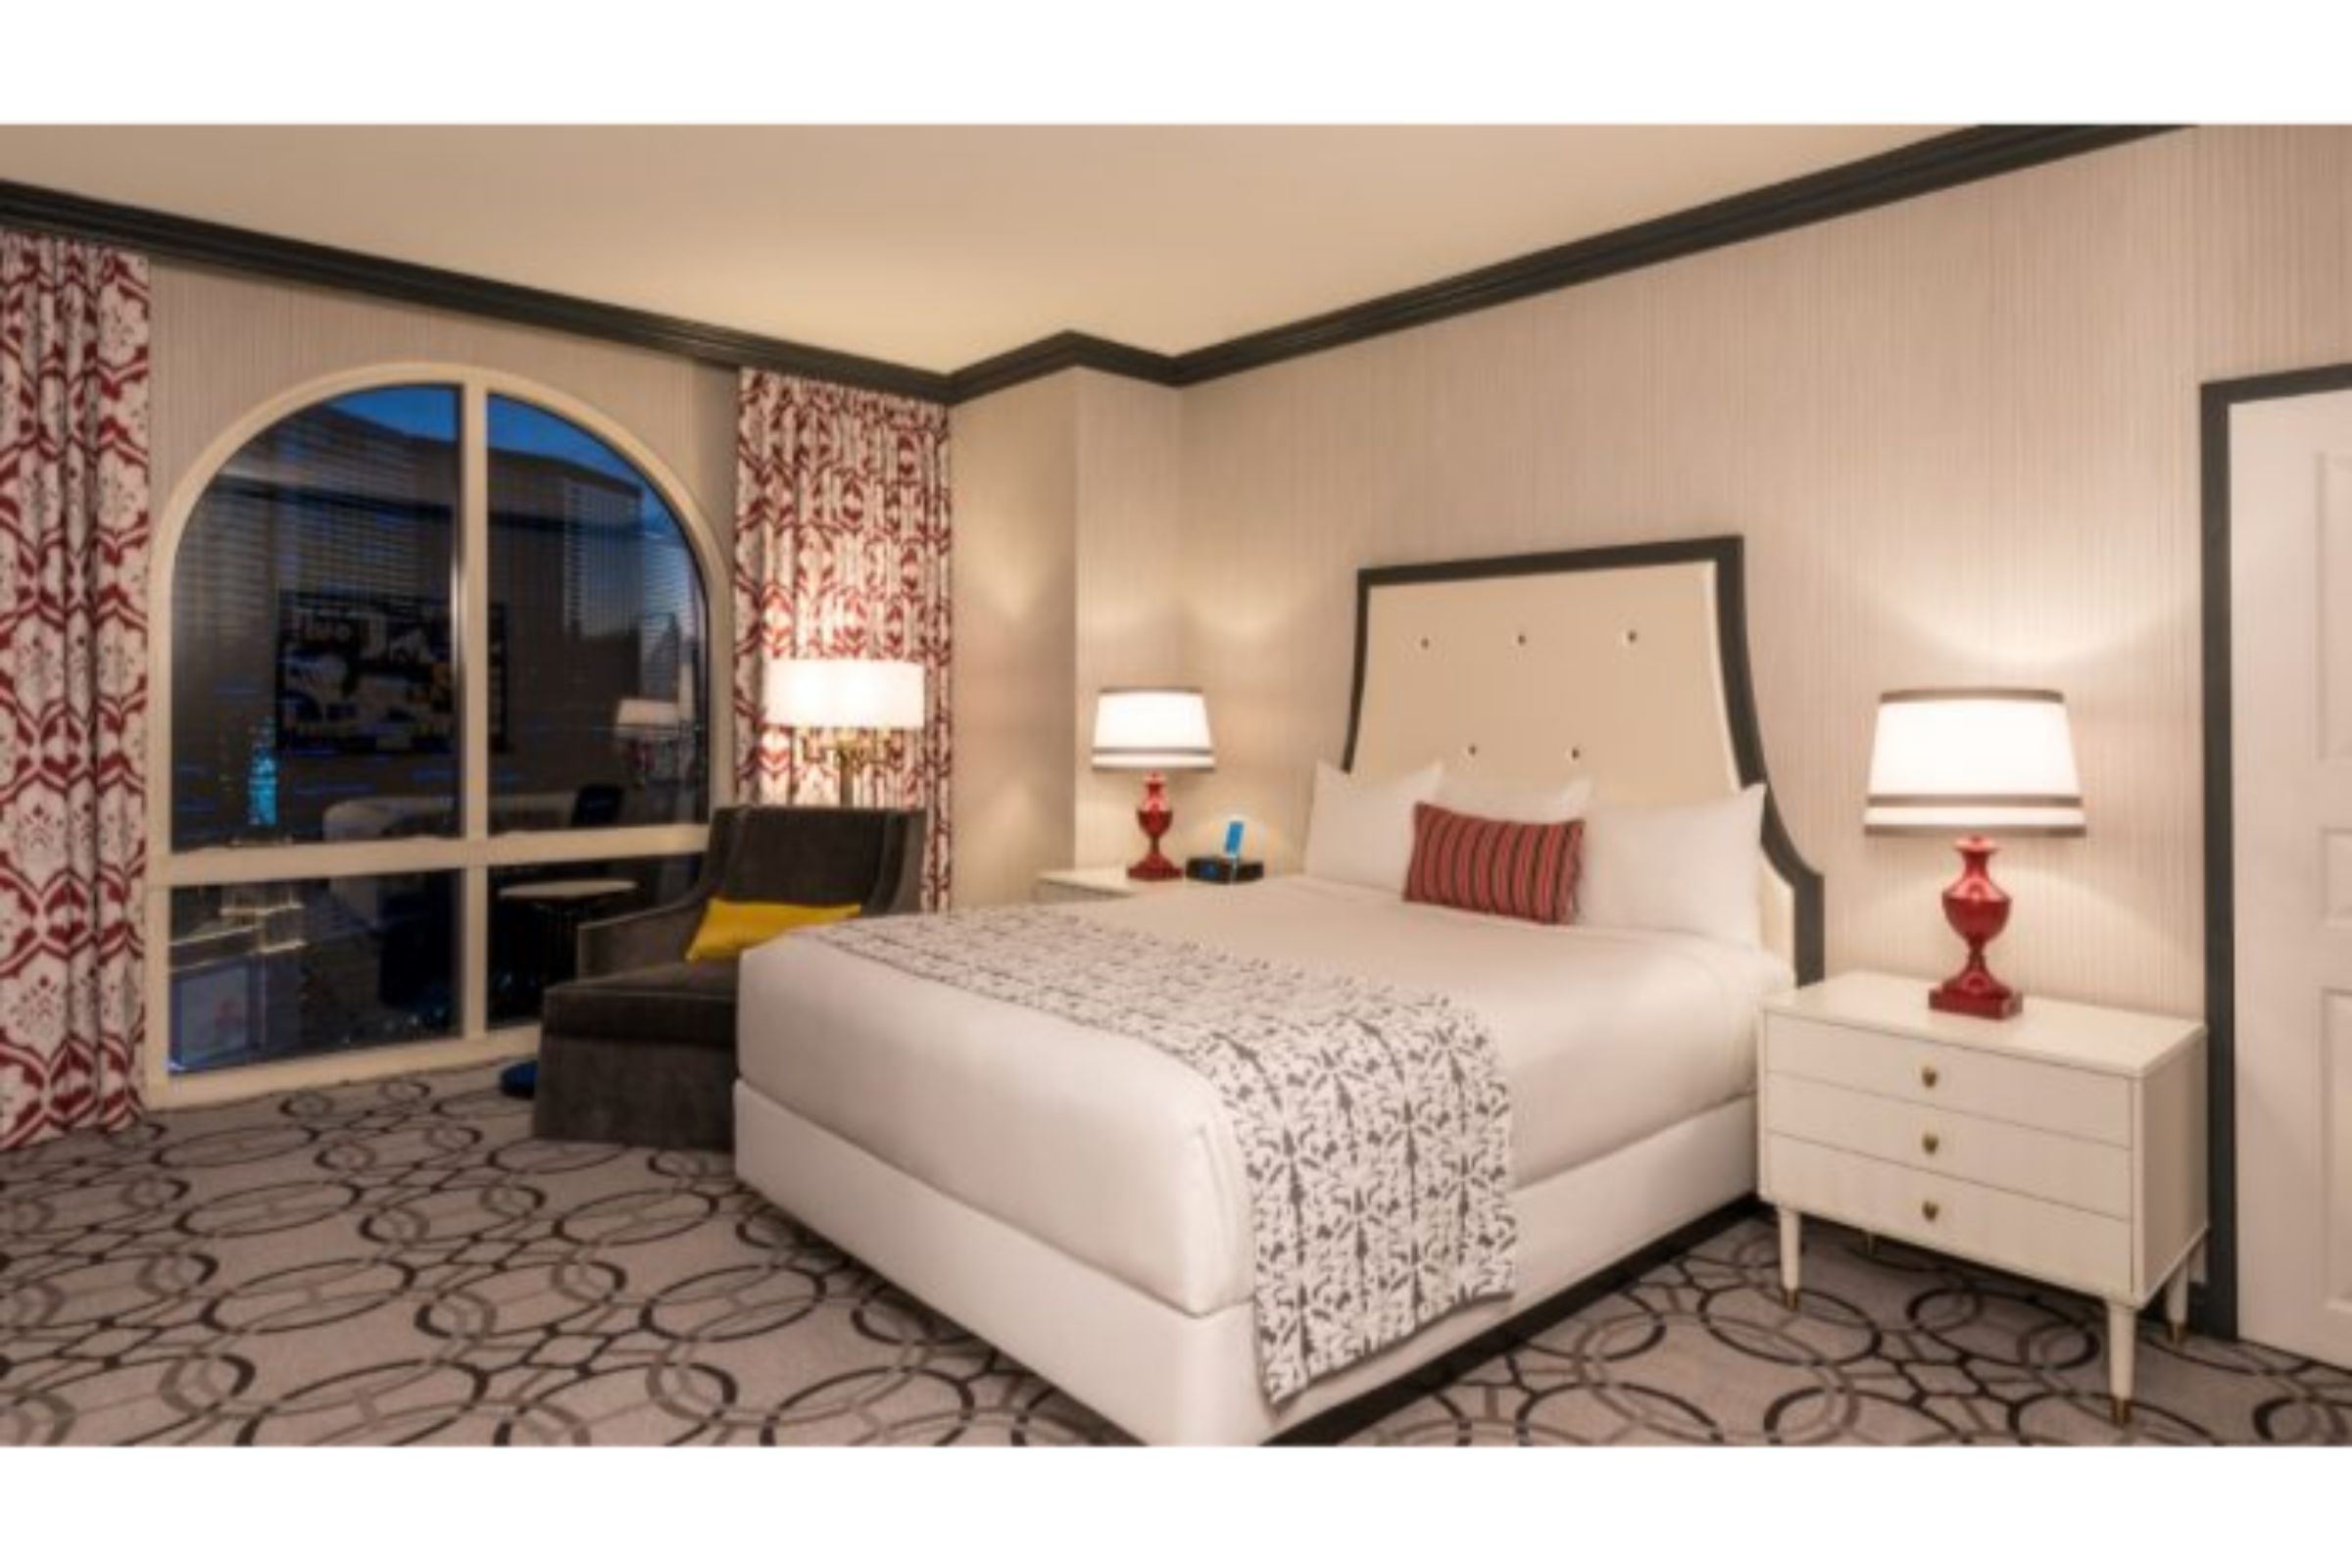 Paris Las Vegas Resort & Casino, Las Vegas @GBP 305 - Paris Las Vegas  Resort & Casino Price, Address & Reviews